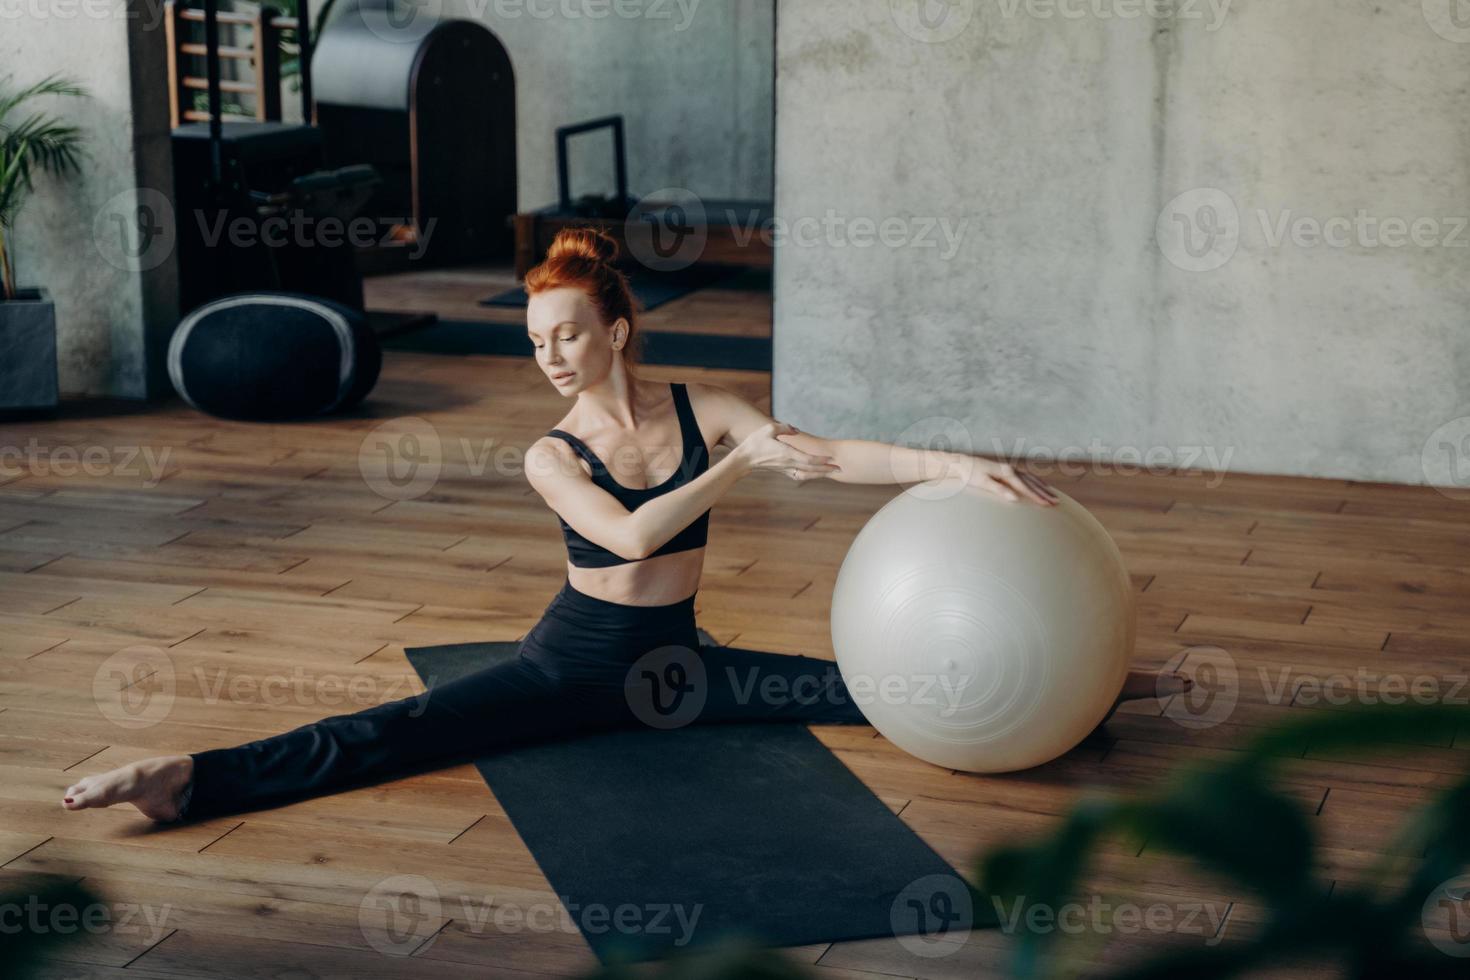 jovem em posição dividida exercitando com fitball no estúdio de fitness foto